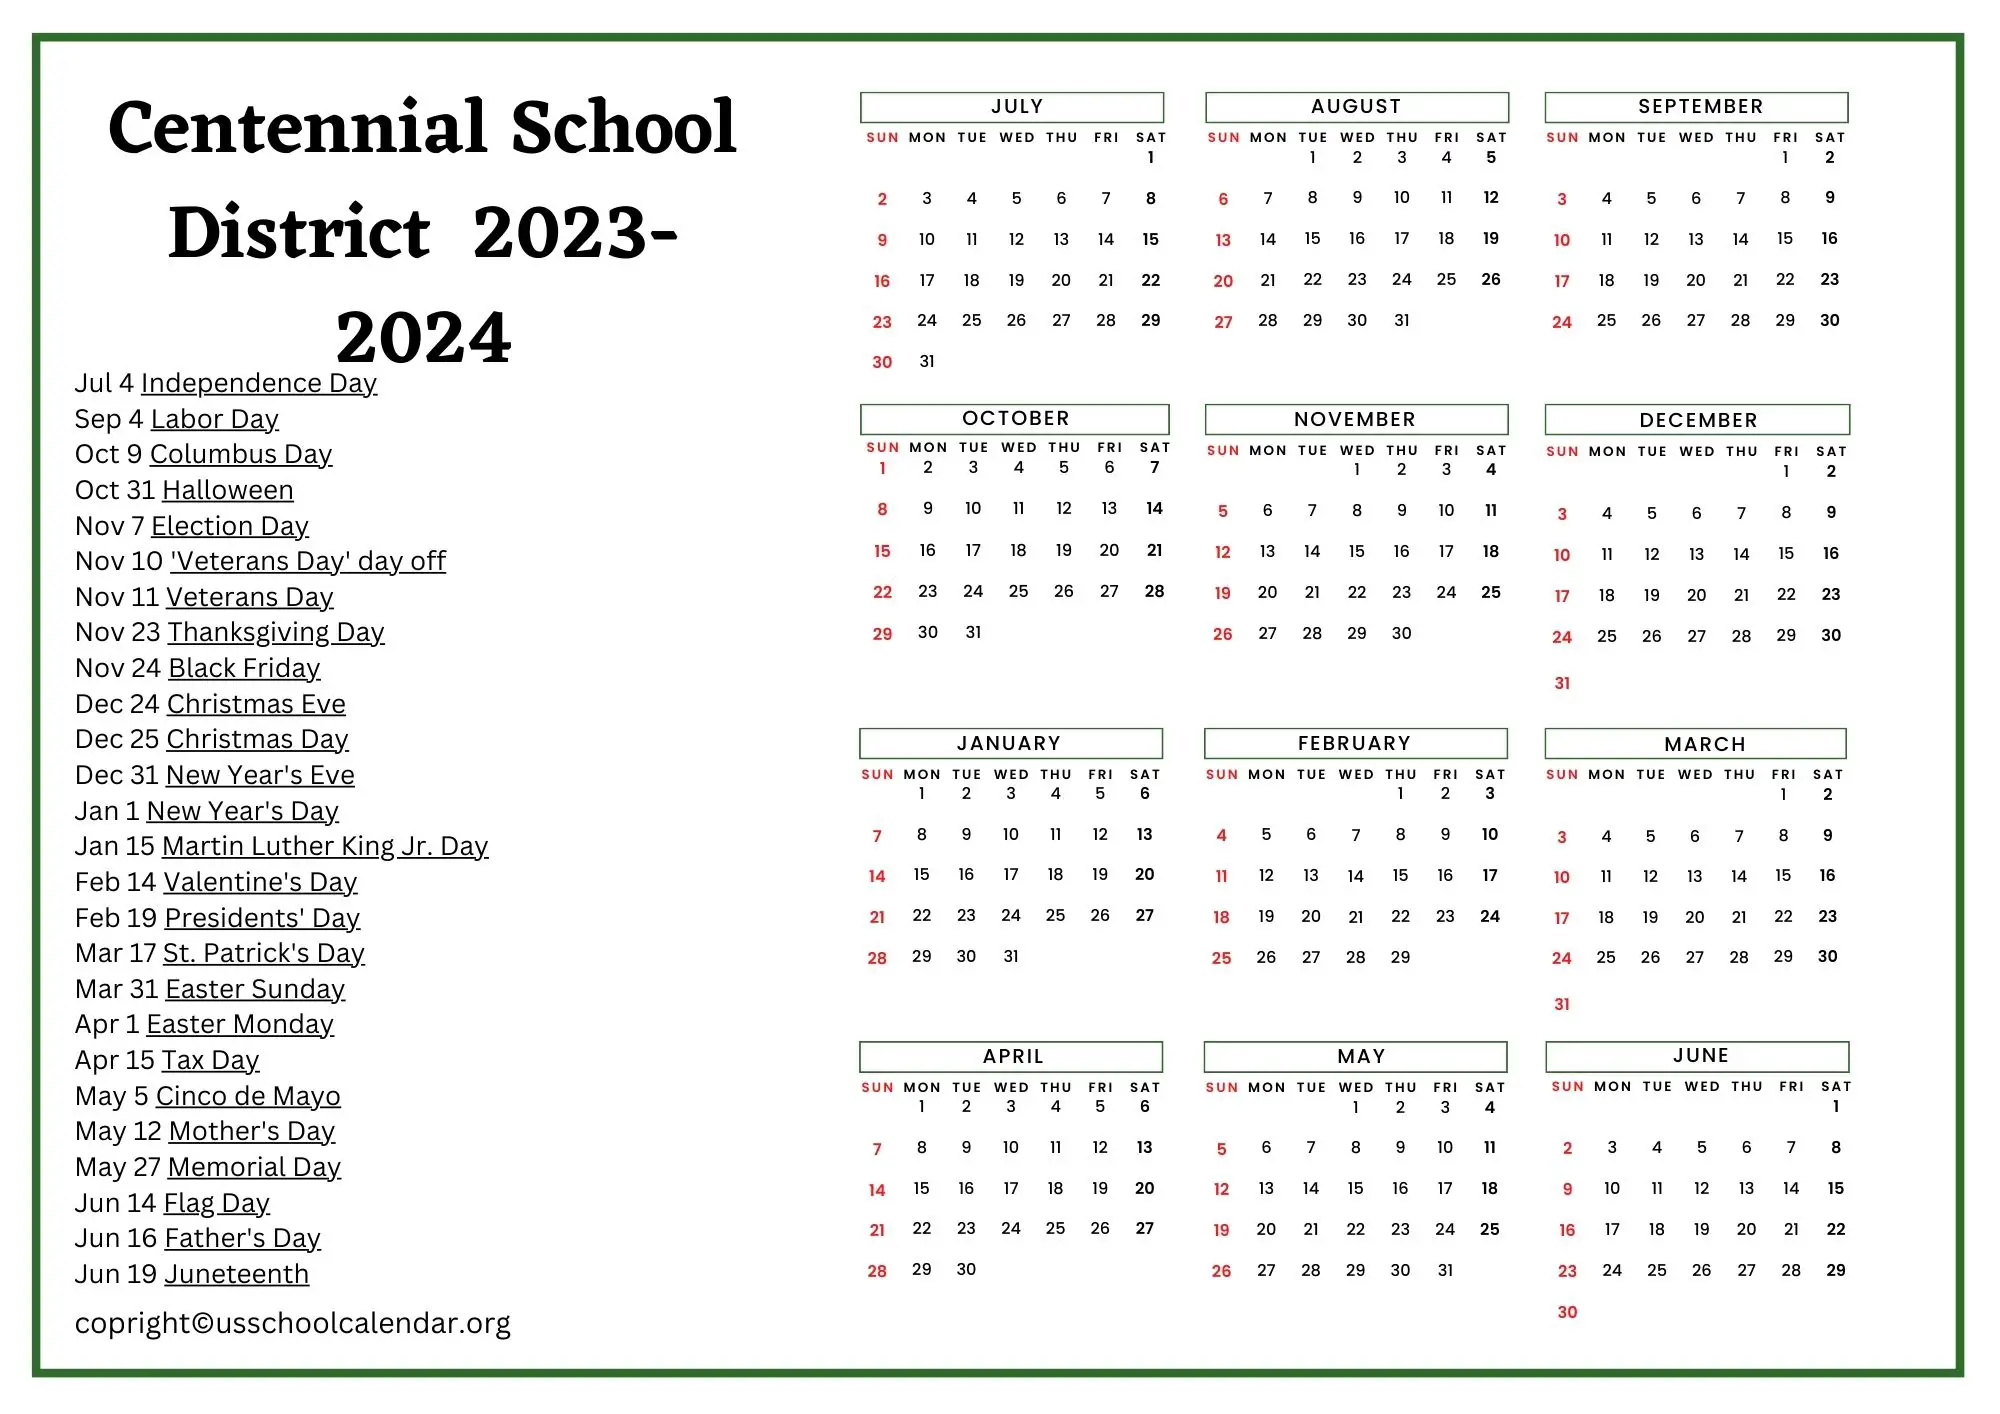 Centennial School District Calendar with Holidays 2023 2024